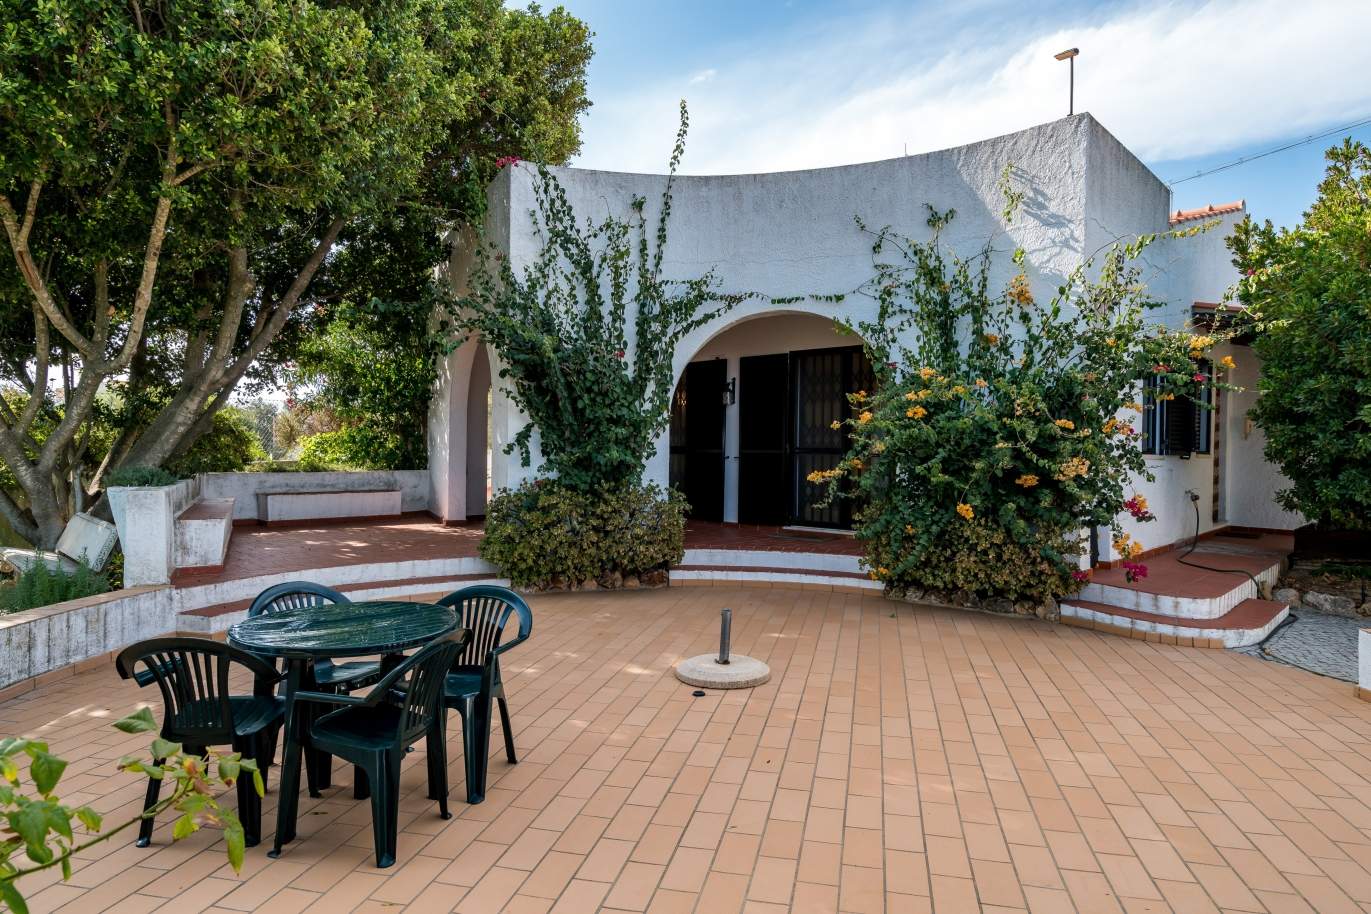 Venda de moradia com piscina e jardim em Almancil, Algarve, Portugal_119453